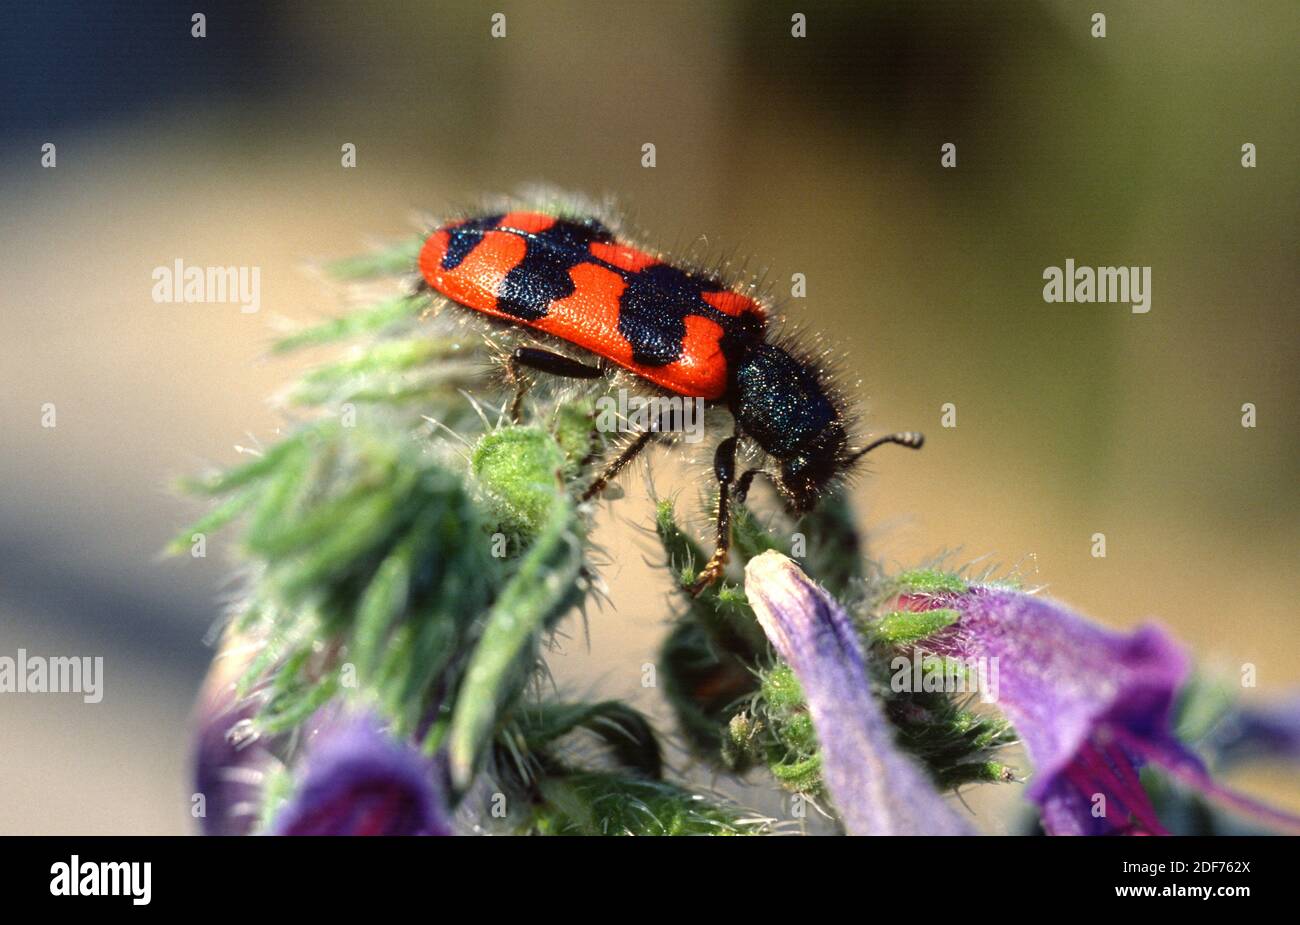 Trichodes apiarius es un escarabajo nativo de Europa y el norte de África. Foto de stock